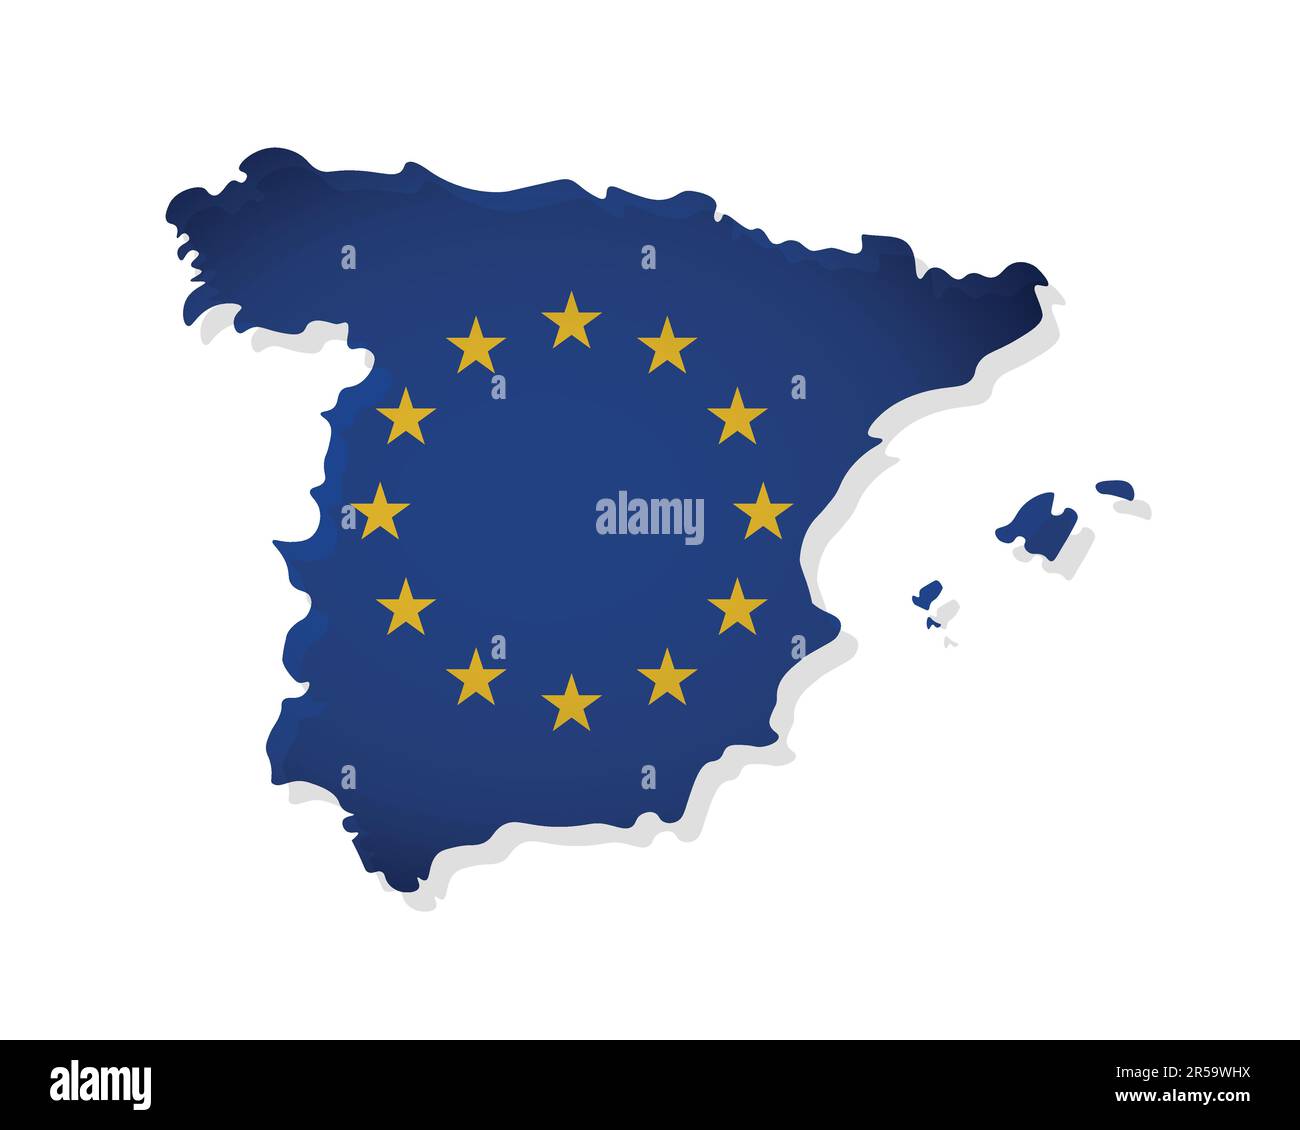 Vektordarstellung mit isolierter Karte eines Mitglieds der Europäischen Union - Spanien. Das Konzept ist mit der EU-Flagge und gelben Sternen auf blauem Hintergrund dekoriert Stock Vektor